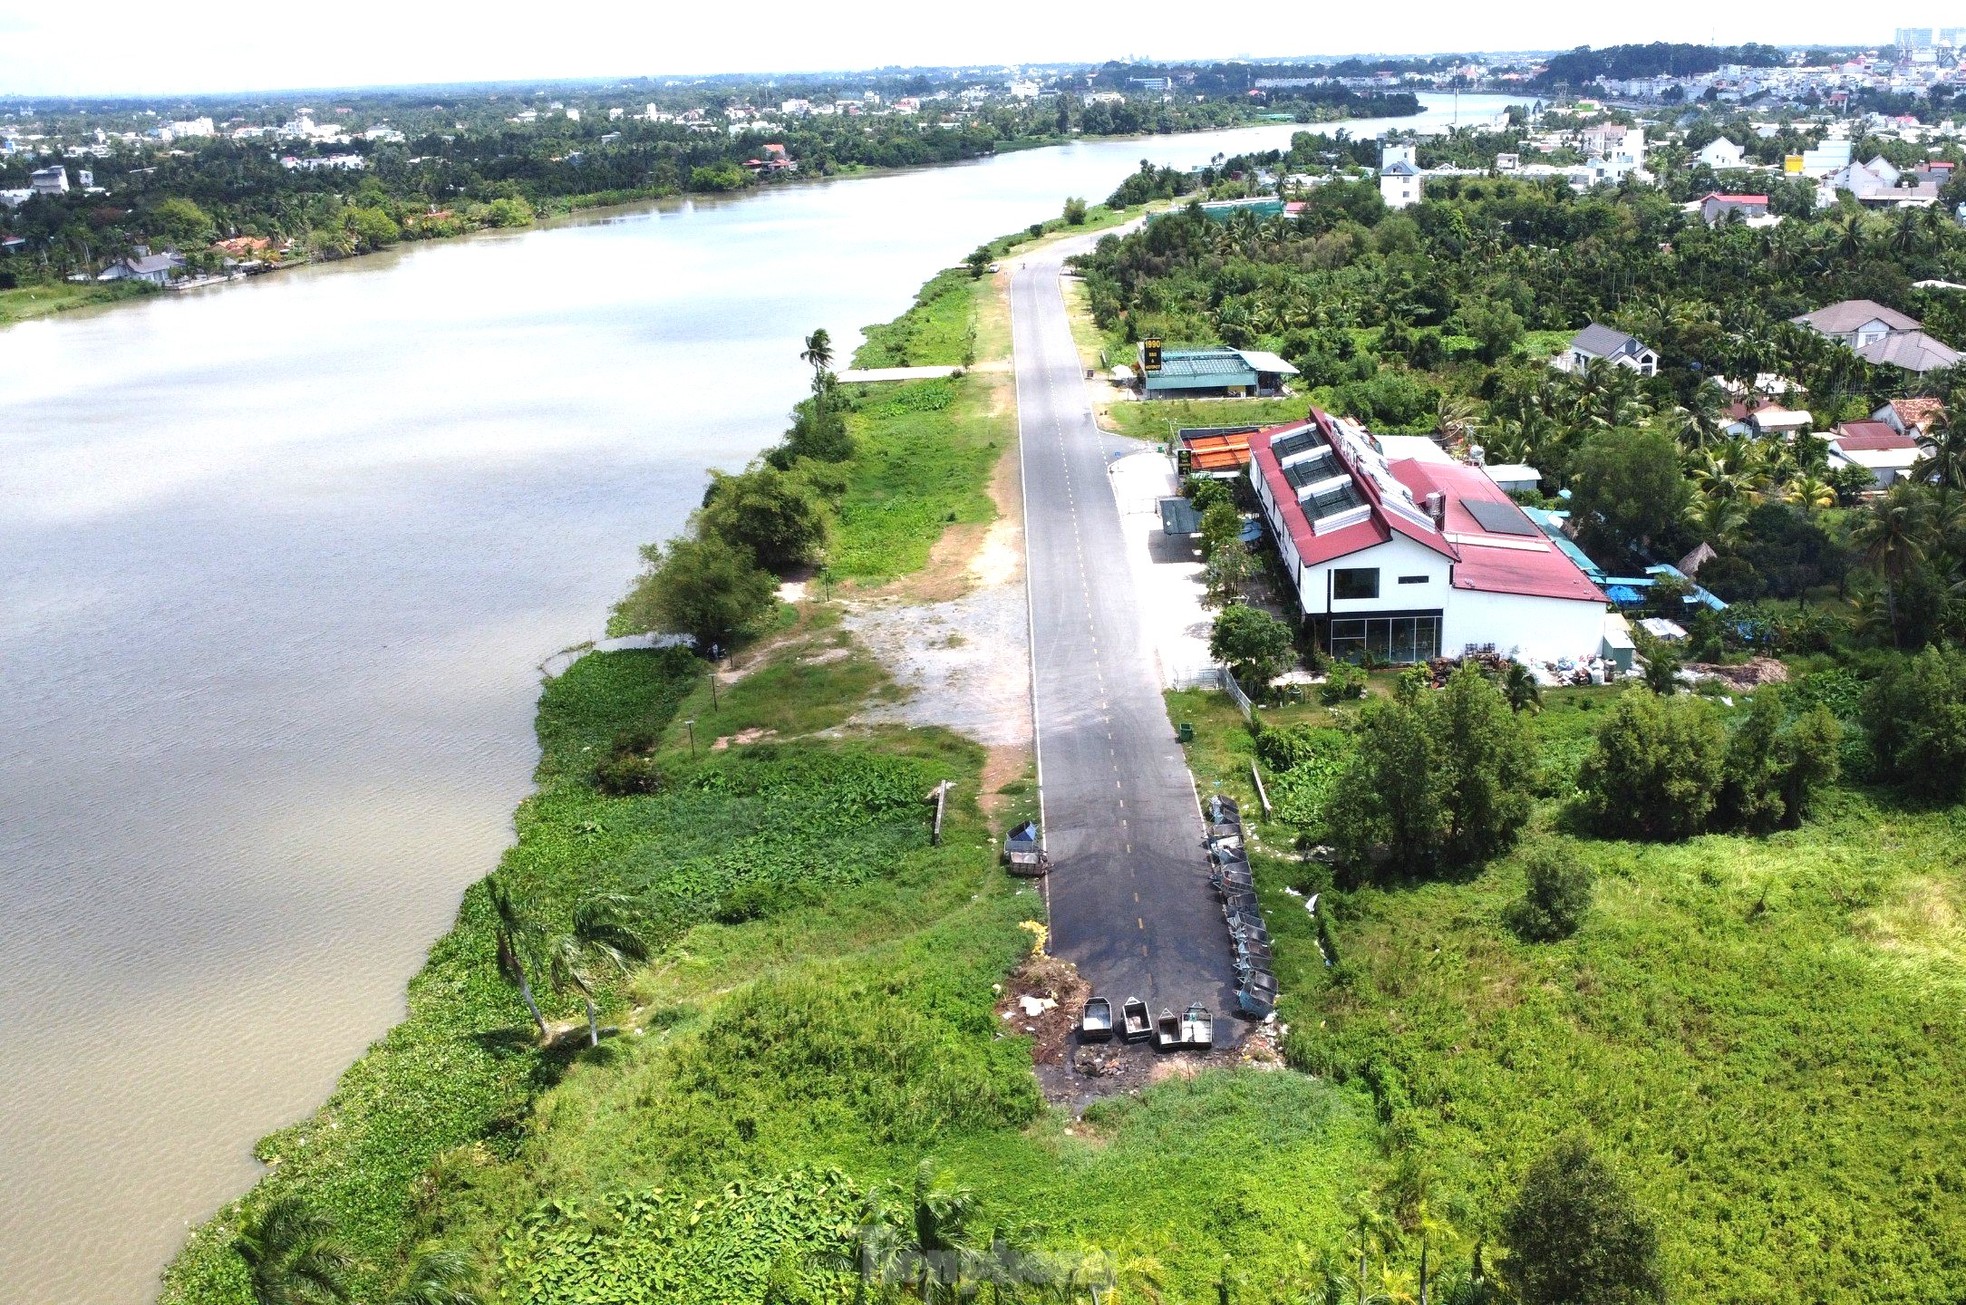 Chi gần 7.000 tỷ đồng, Bình Dương sẽ có phố đi bộ dọc sông Sài Gòn dài gần 16km